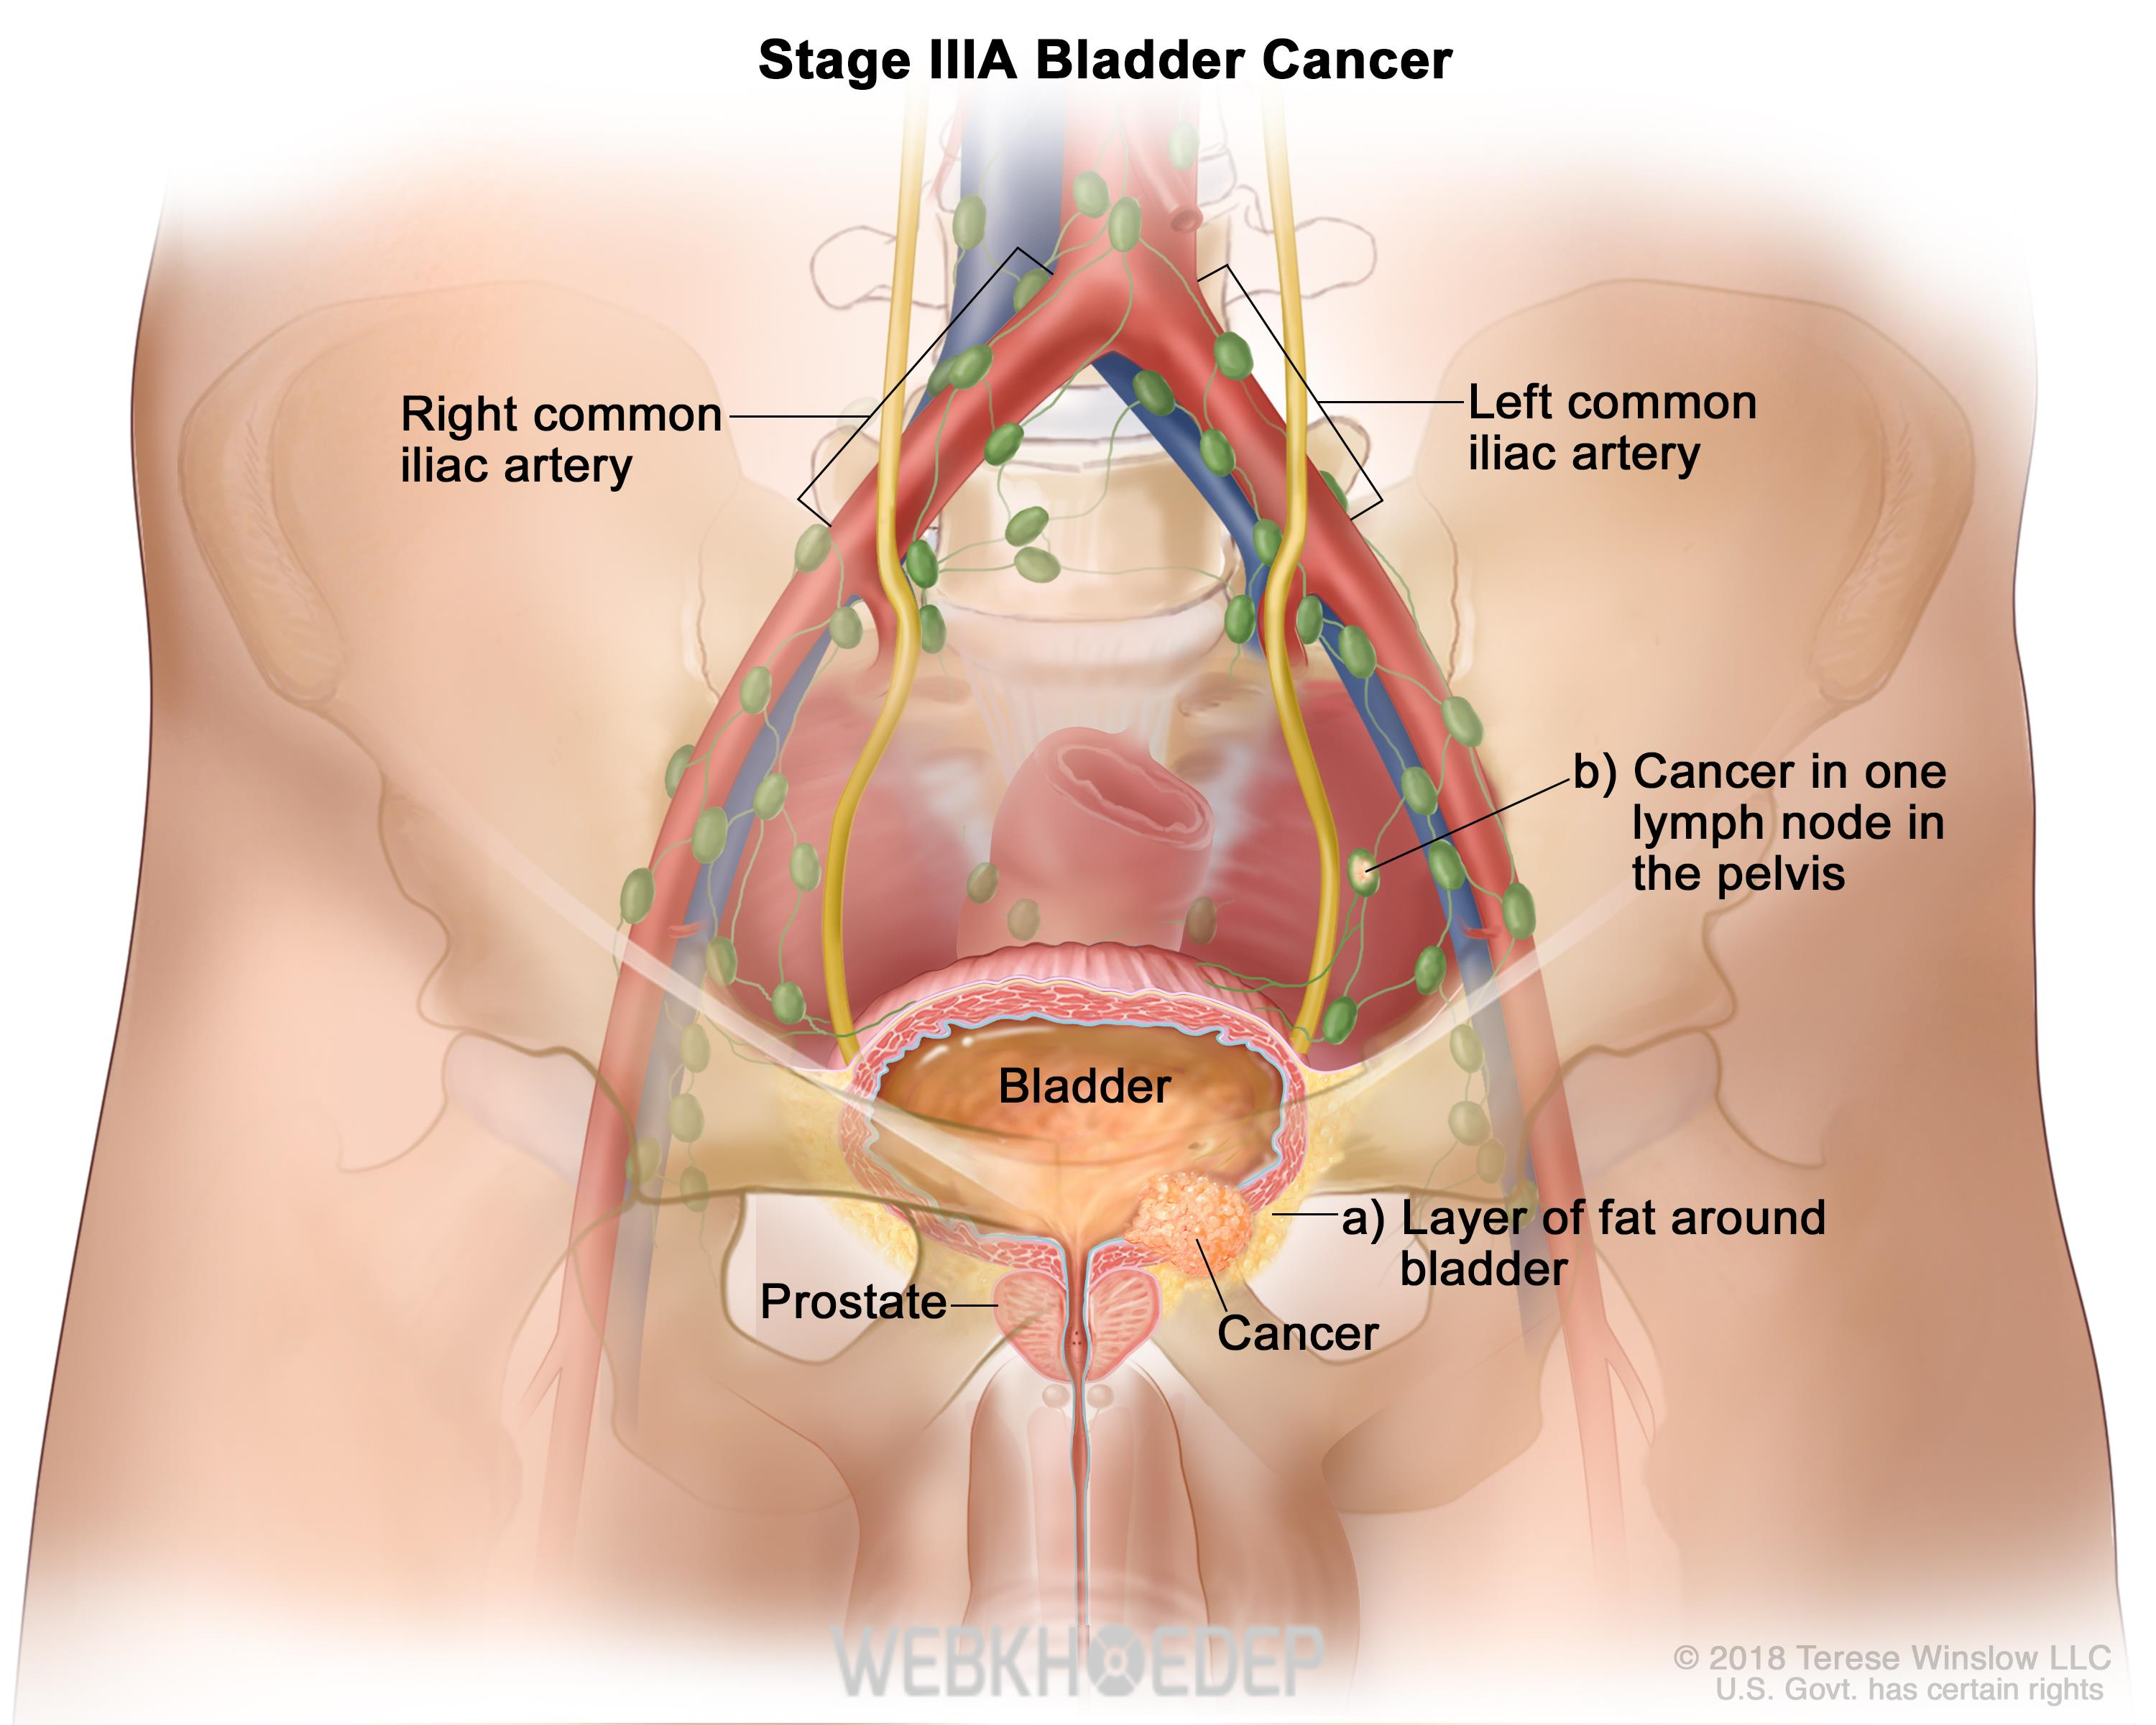 Ung thư tuyến tiền liệt ở giai đoạn 3 - khối u đã phát triển lớn 